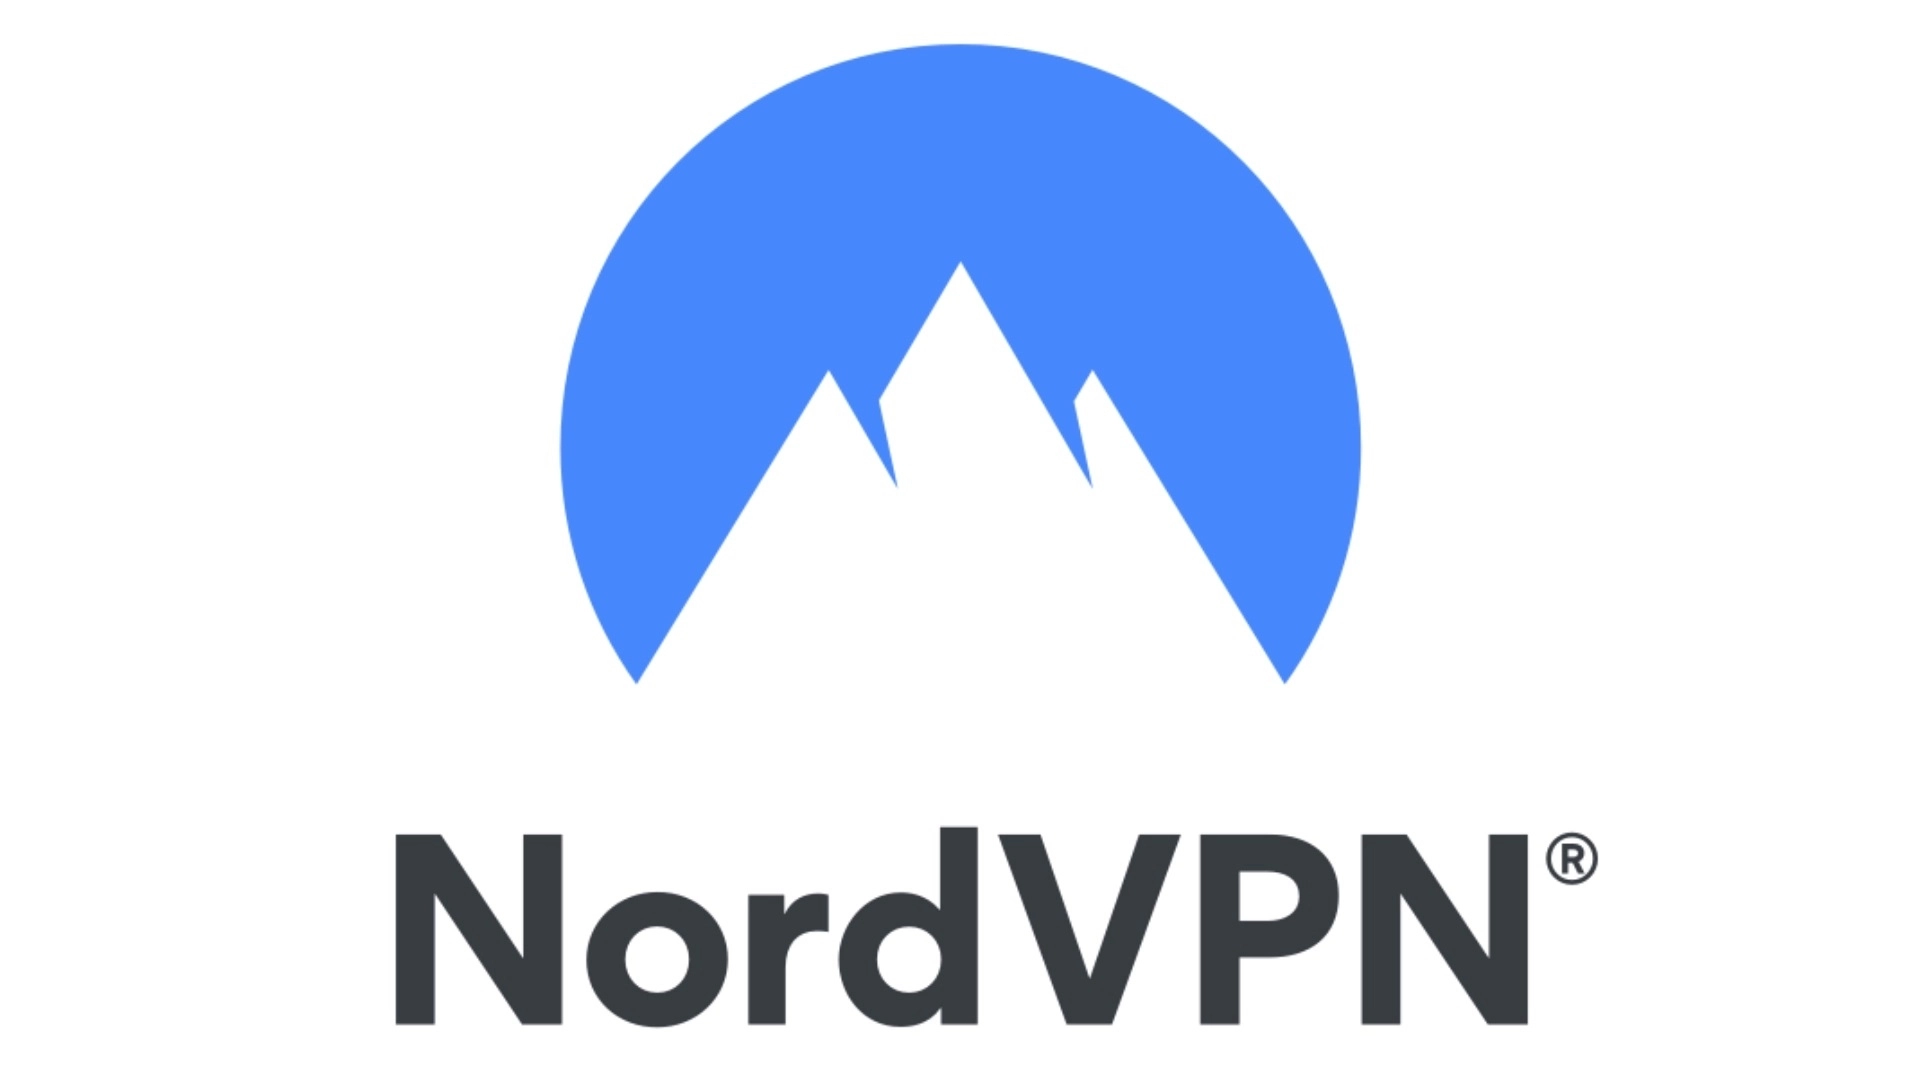 Best Kodi VPN: NordVPN. Image shows the company's logo.